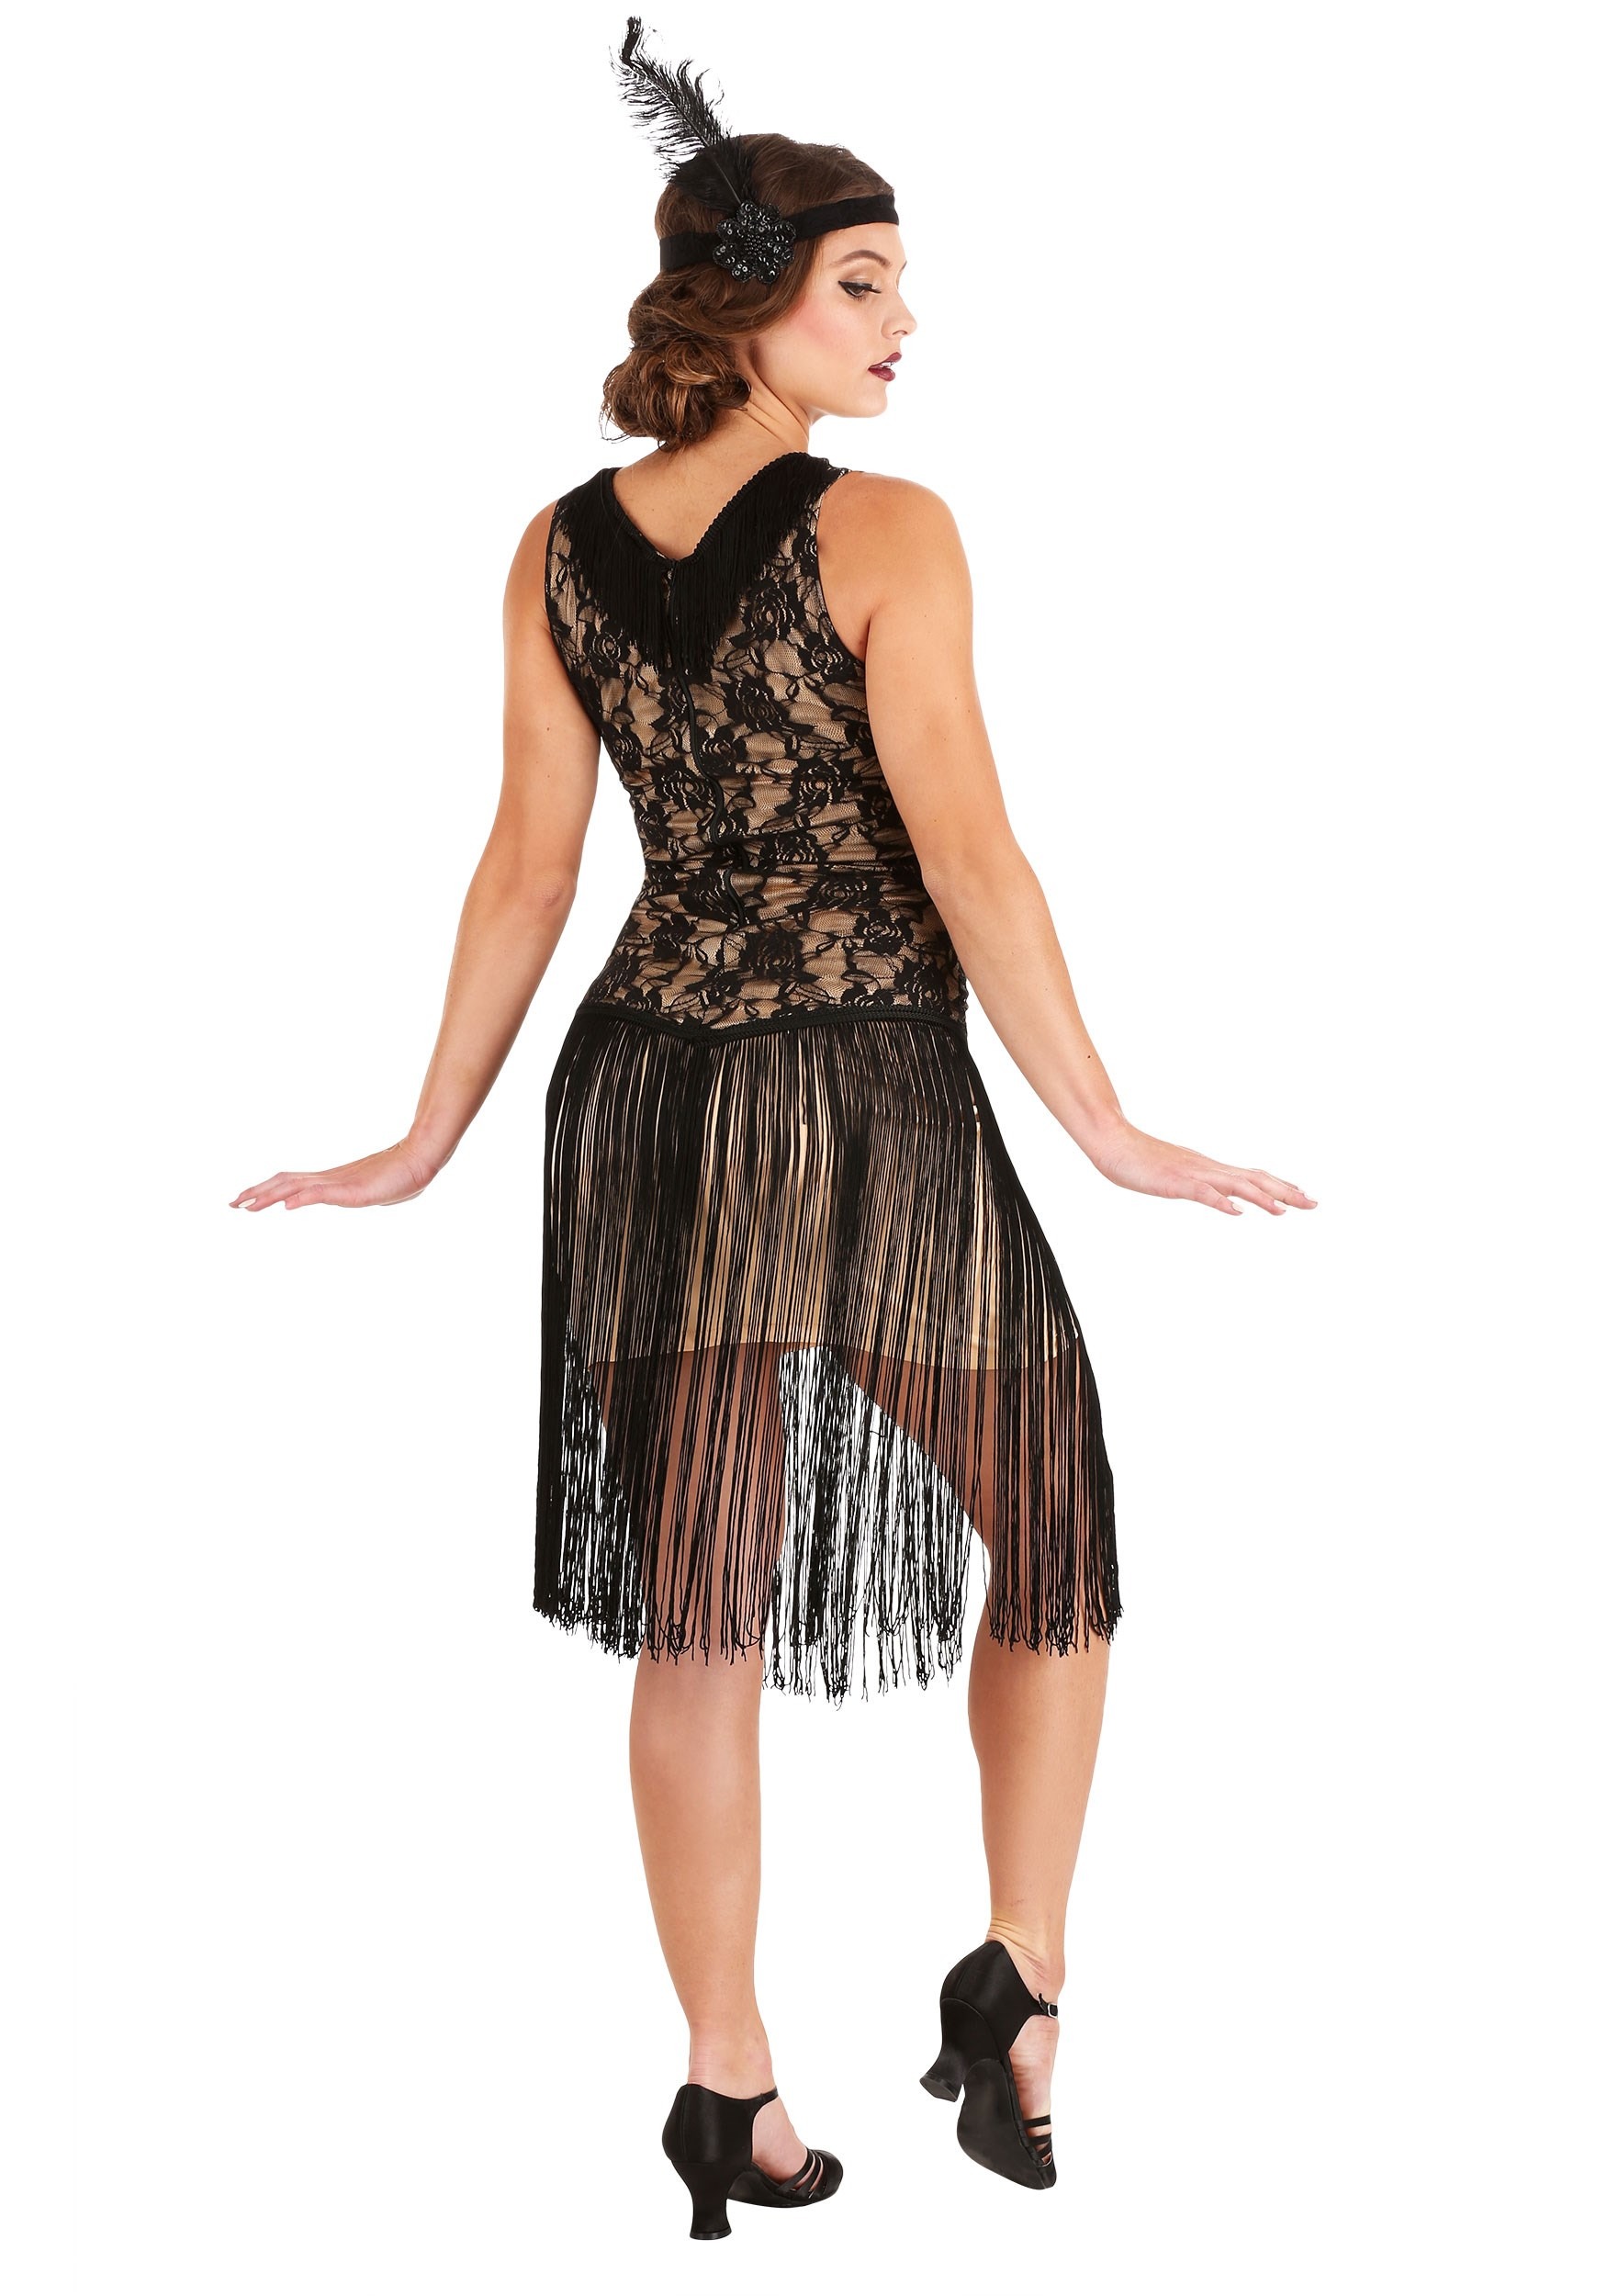 Speakeasy Flapper Fancy Dress Costume For Women